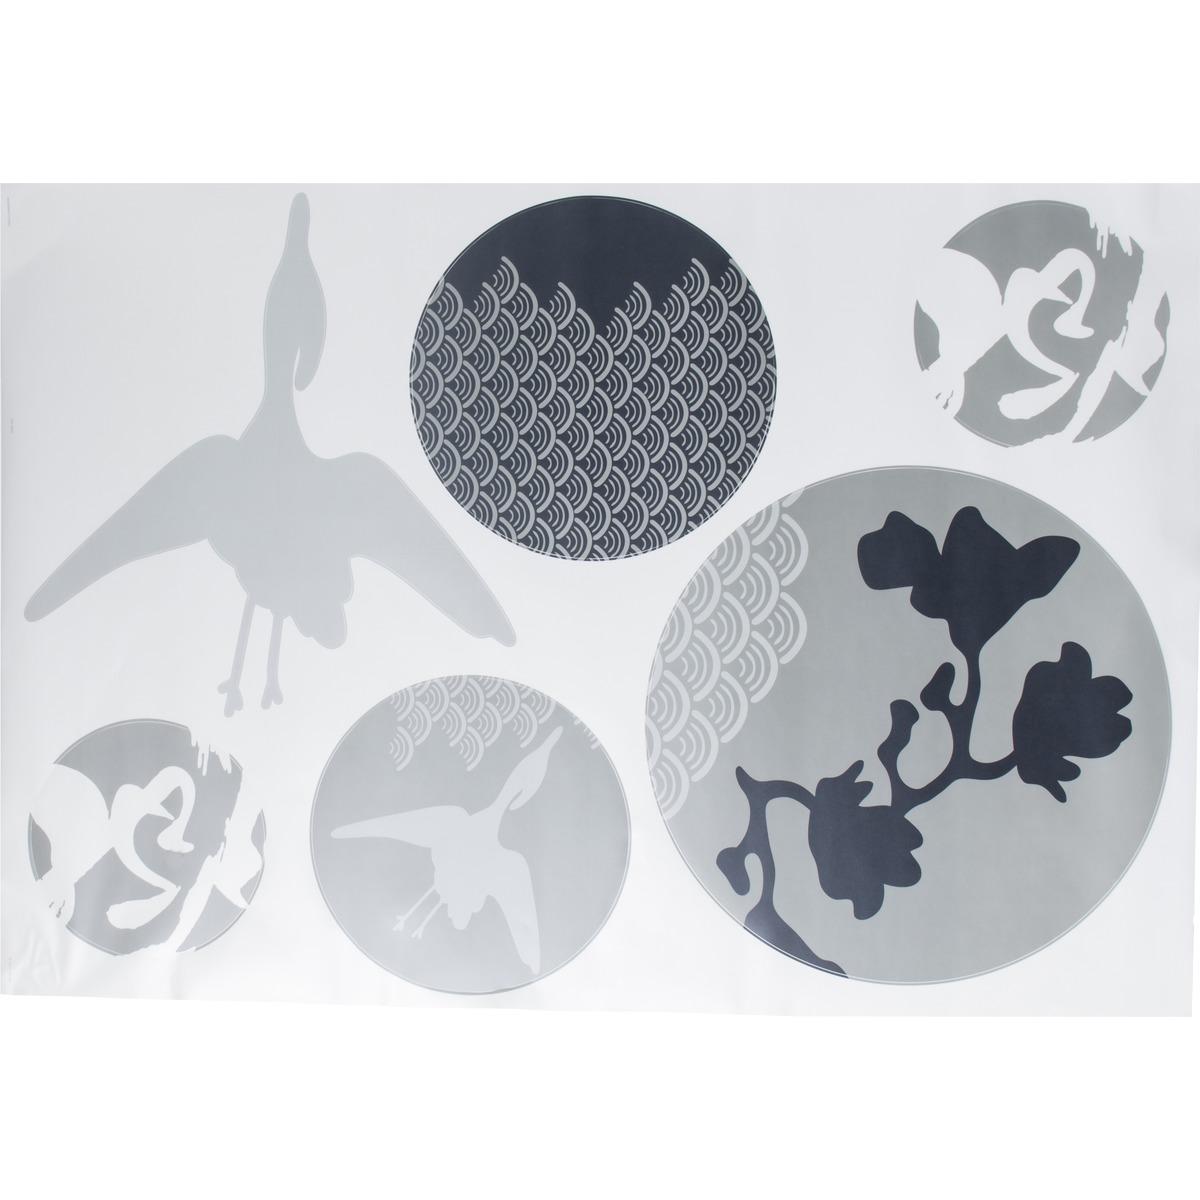 Sticker adhésif déco japon - 100 x 70 cm - blanc, gris